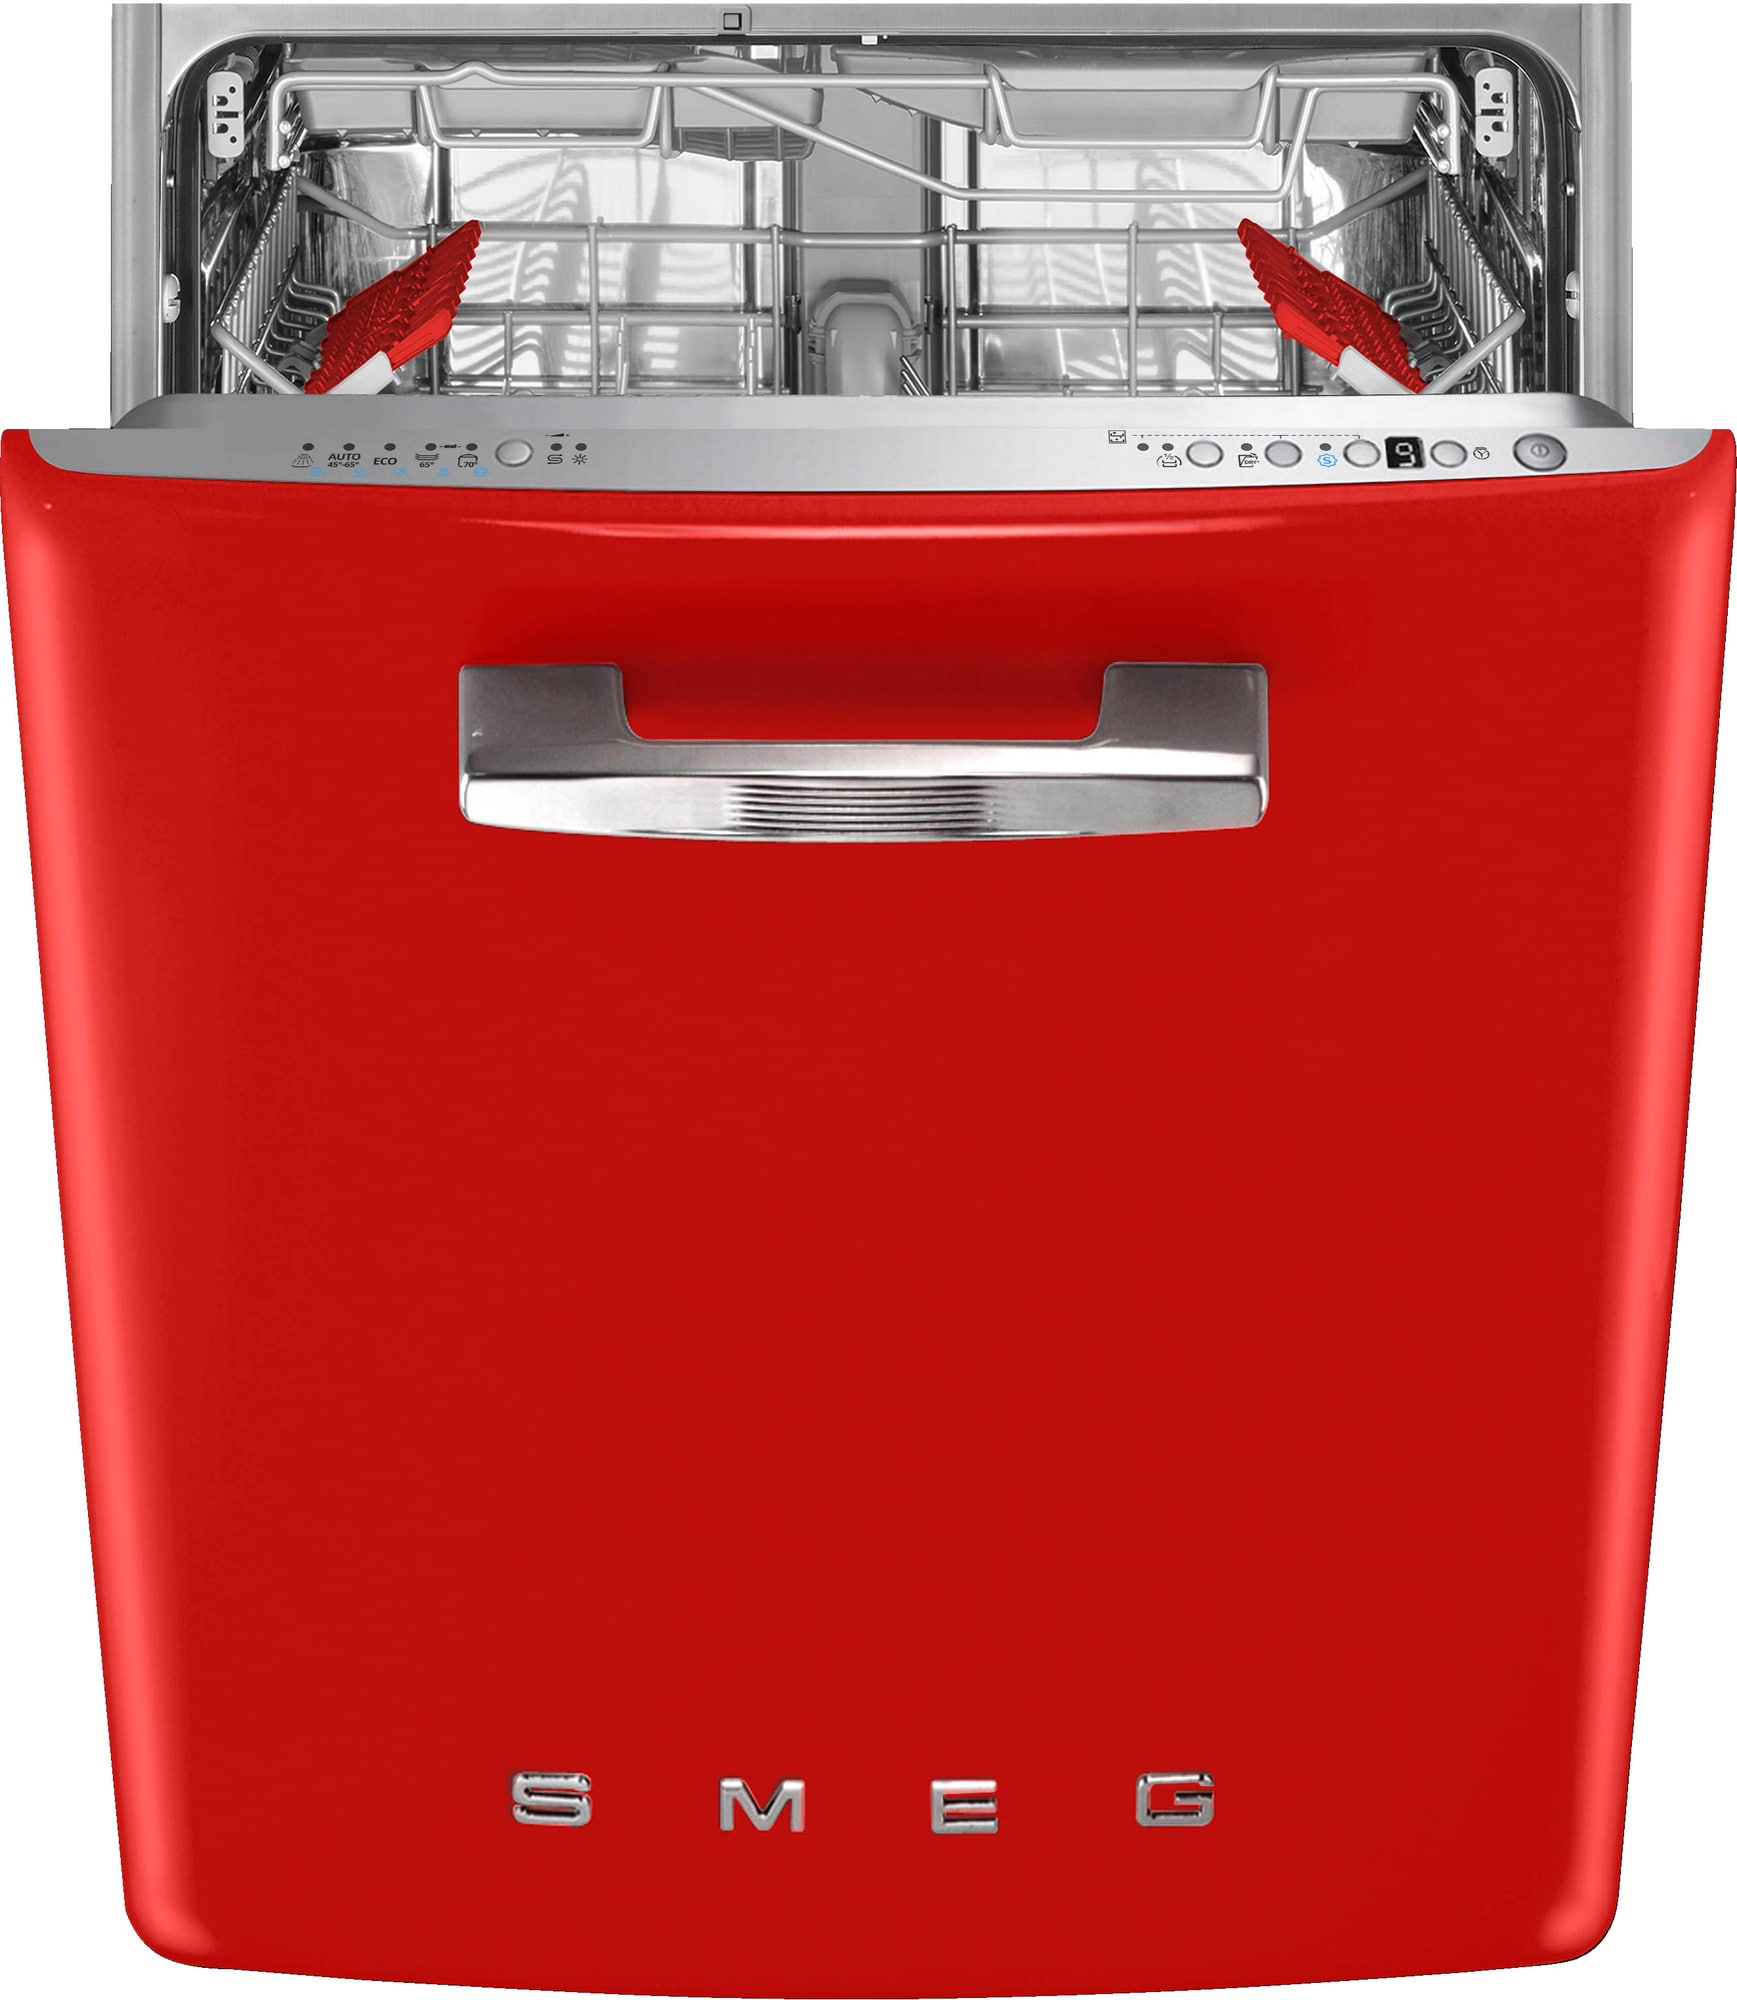 Køb Rød Opvaskemaskine online til meget lav pris!